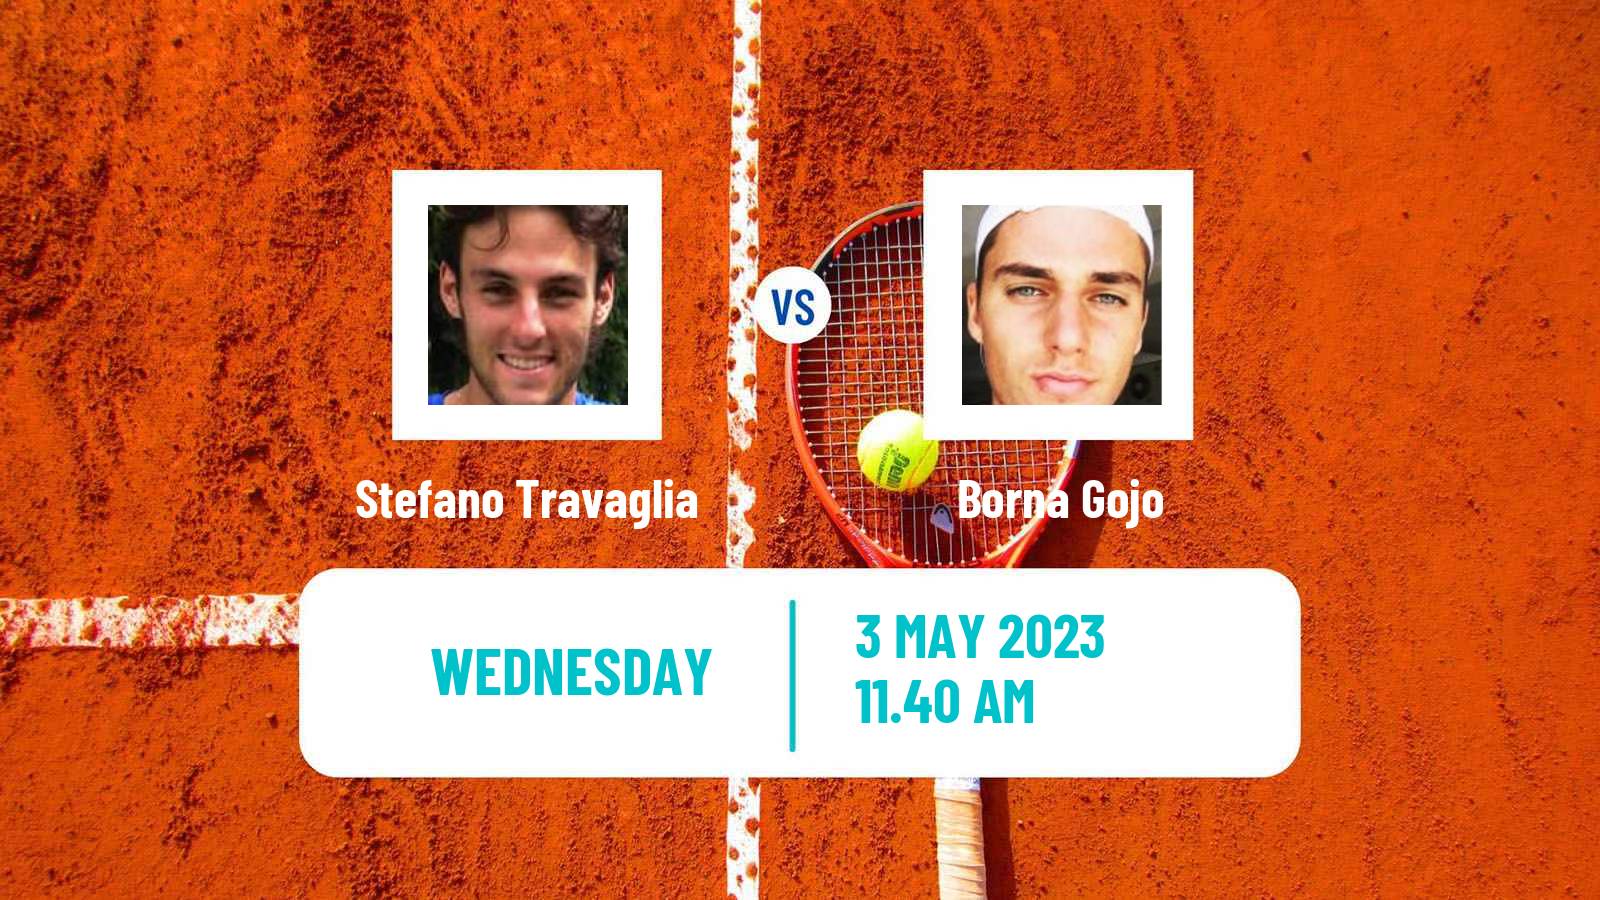 Tennis ATP Challenger Stefano Travaglia - Borna Gojo